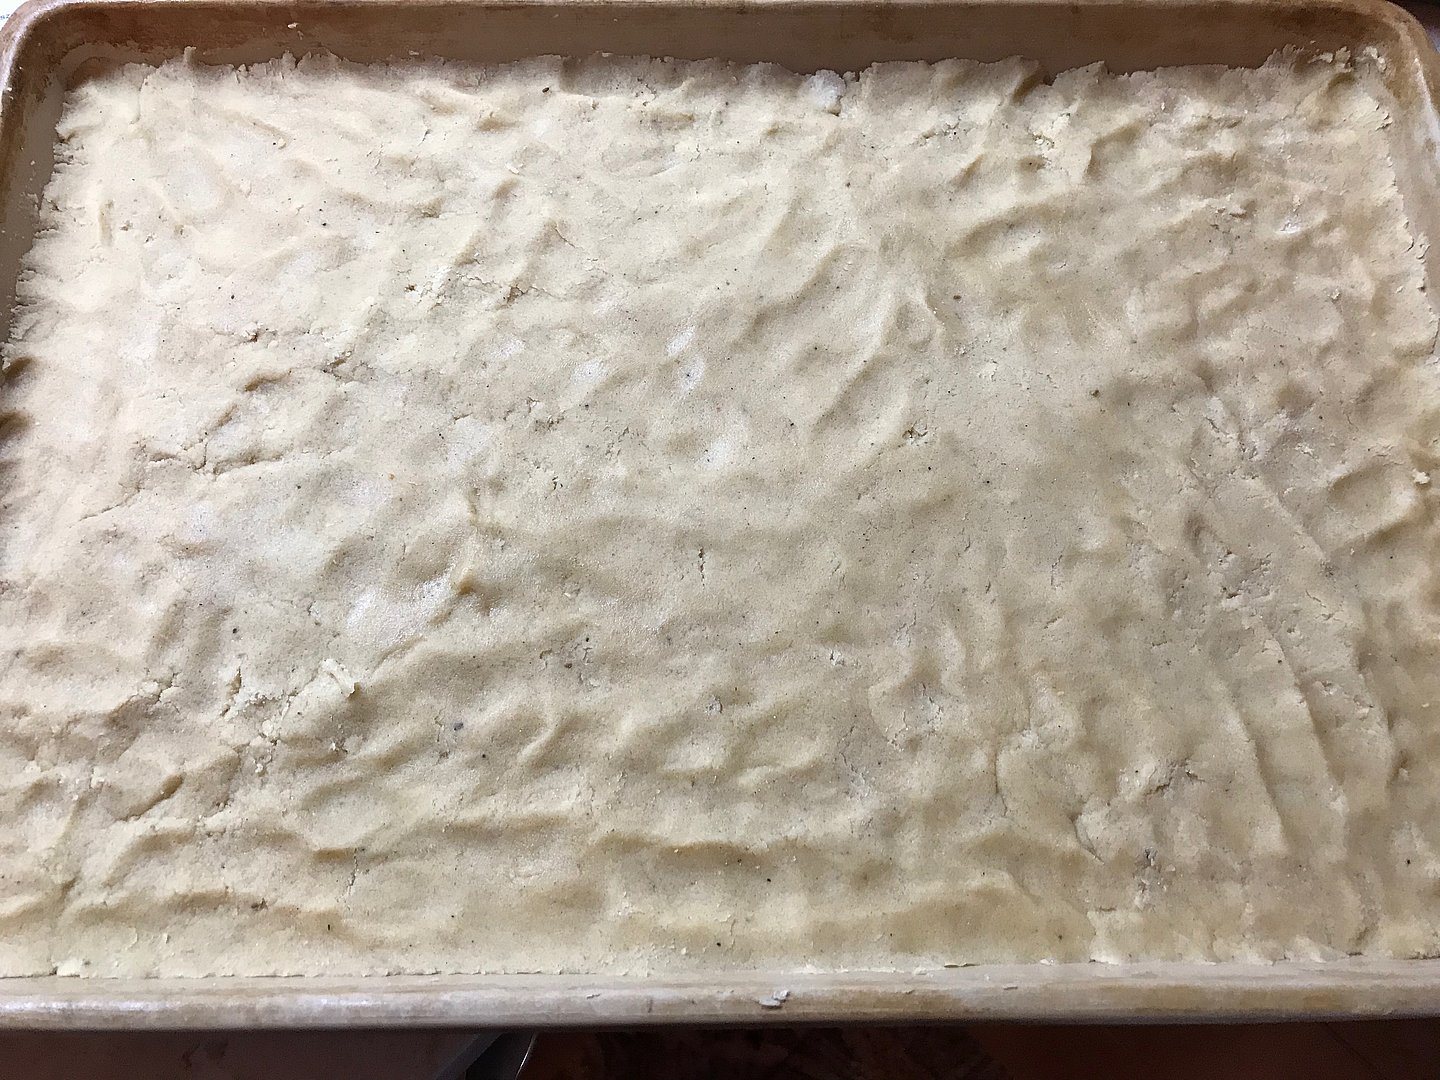 Apfelmus-Streusel-Kuchen im Ofenzauberer von Pampered Chef®